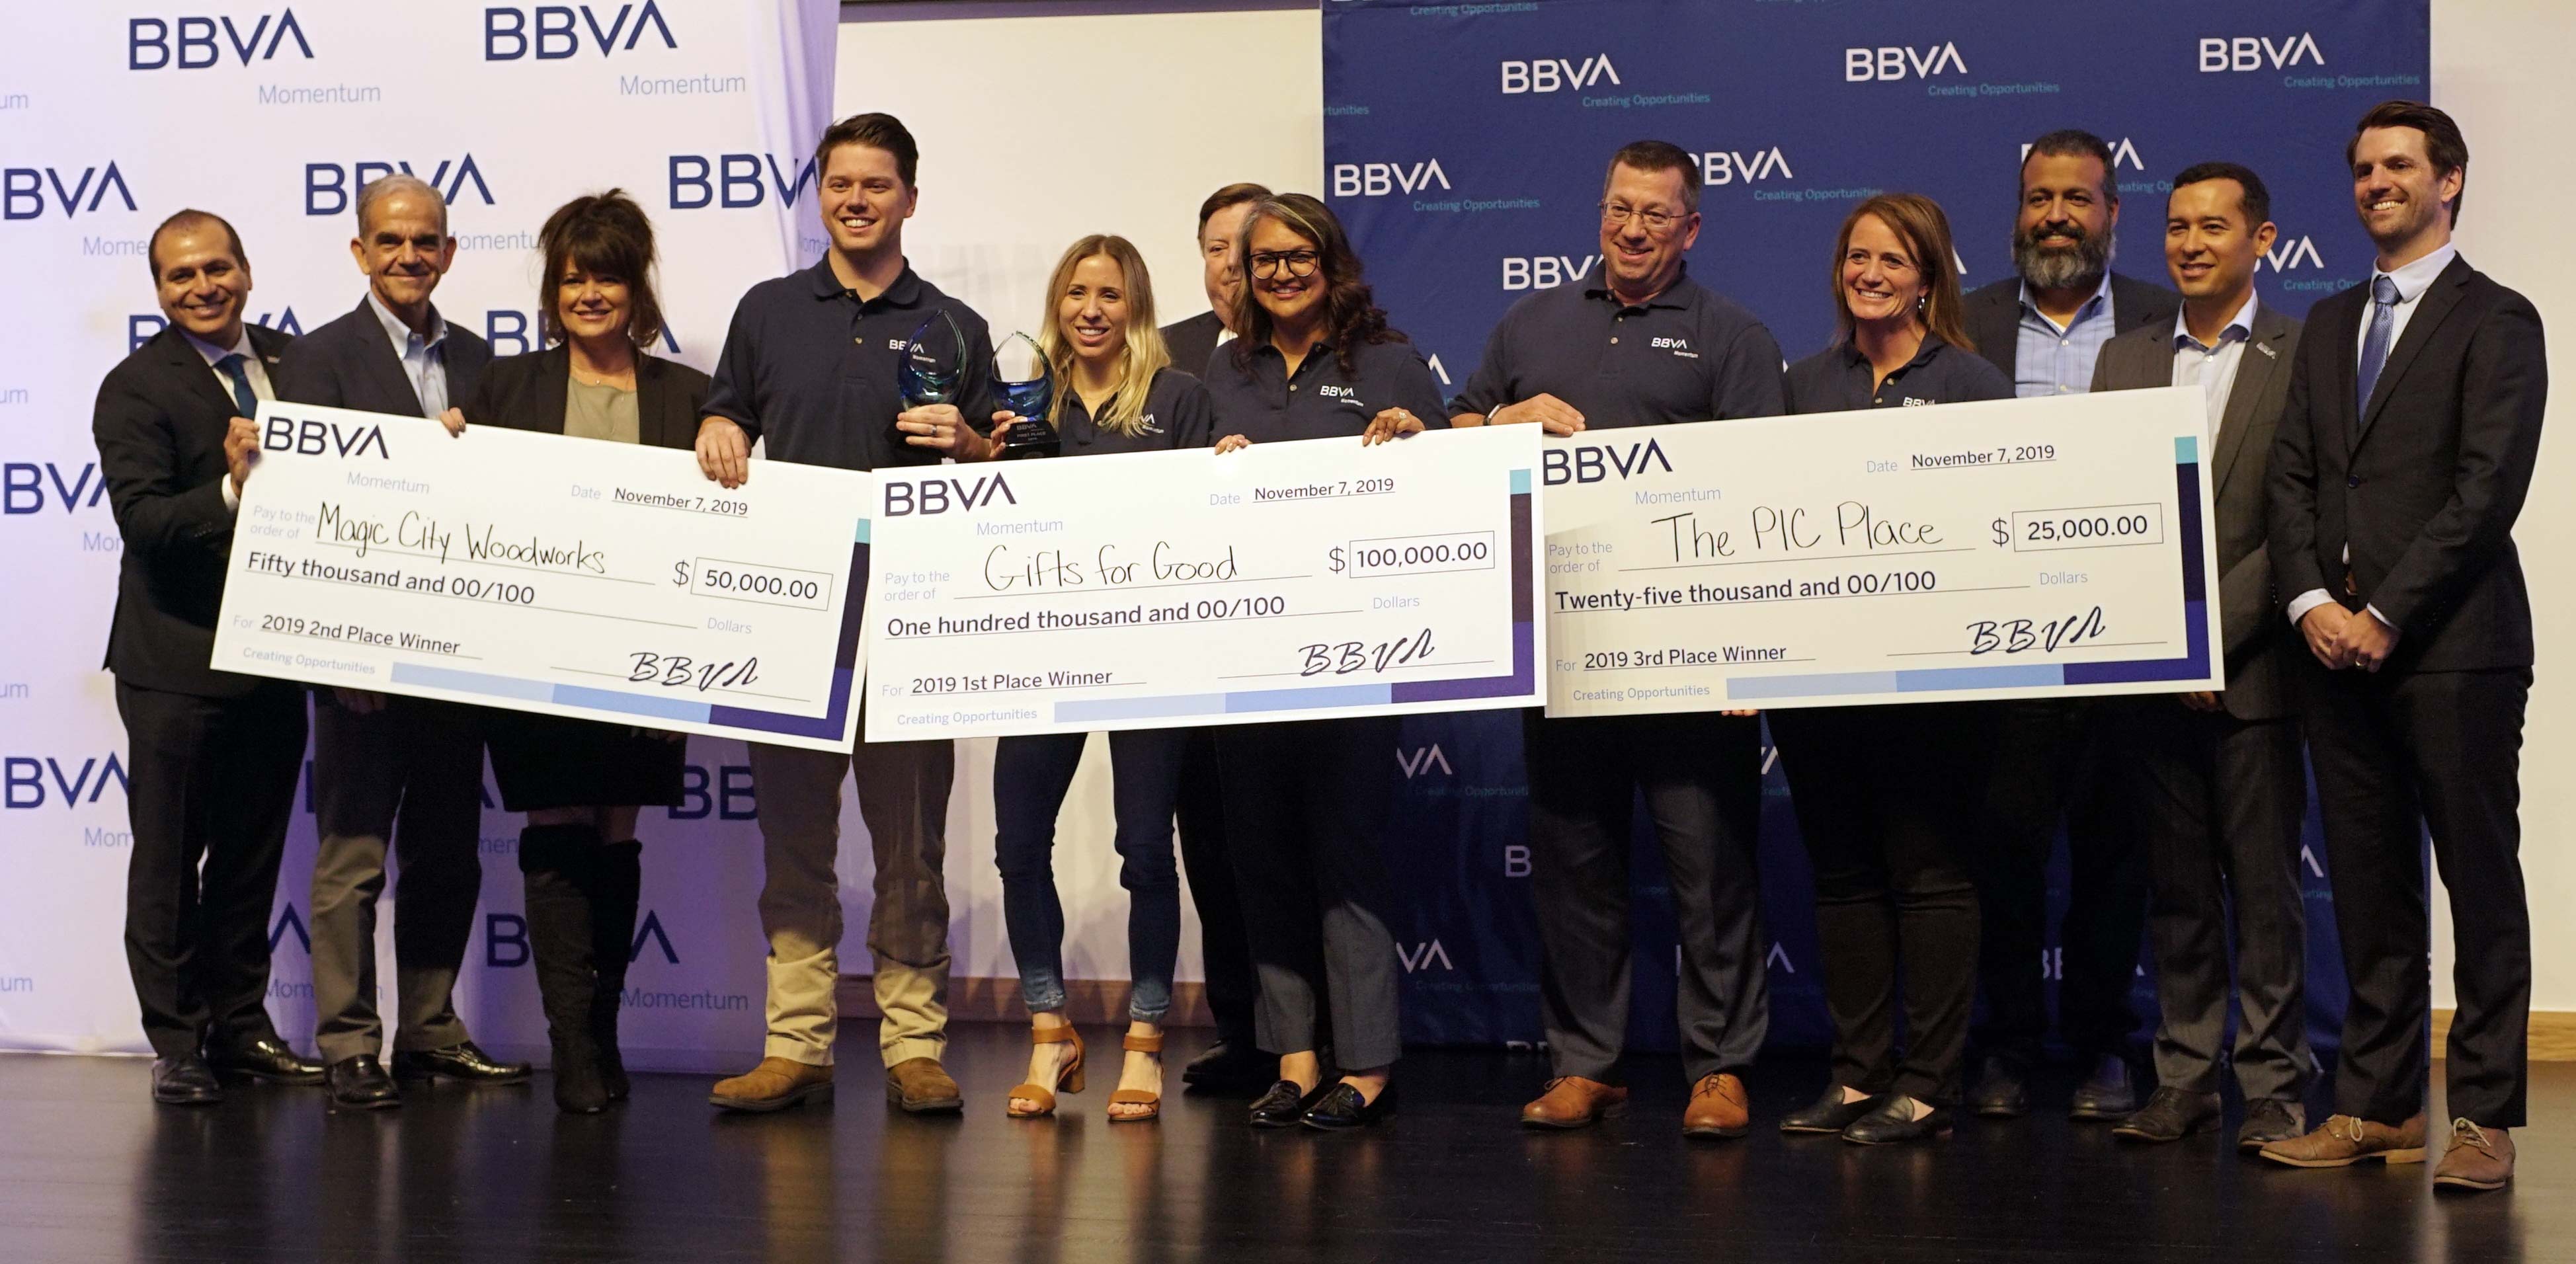 BBVA-USA-Momentum-2019-Winners